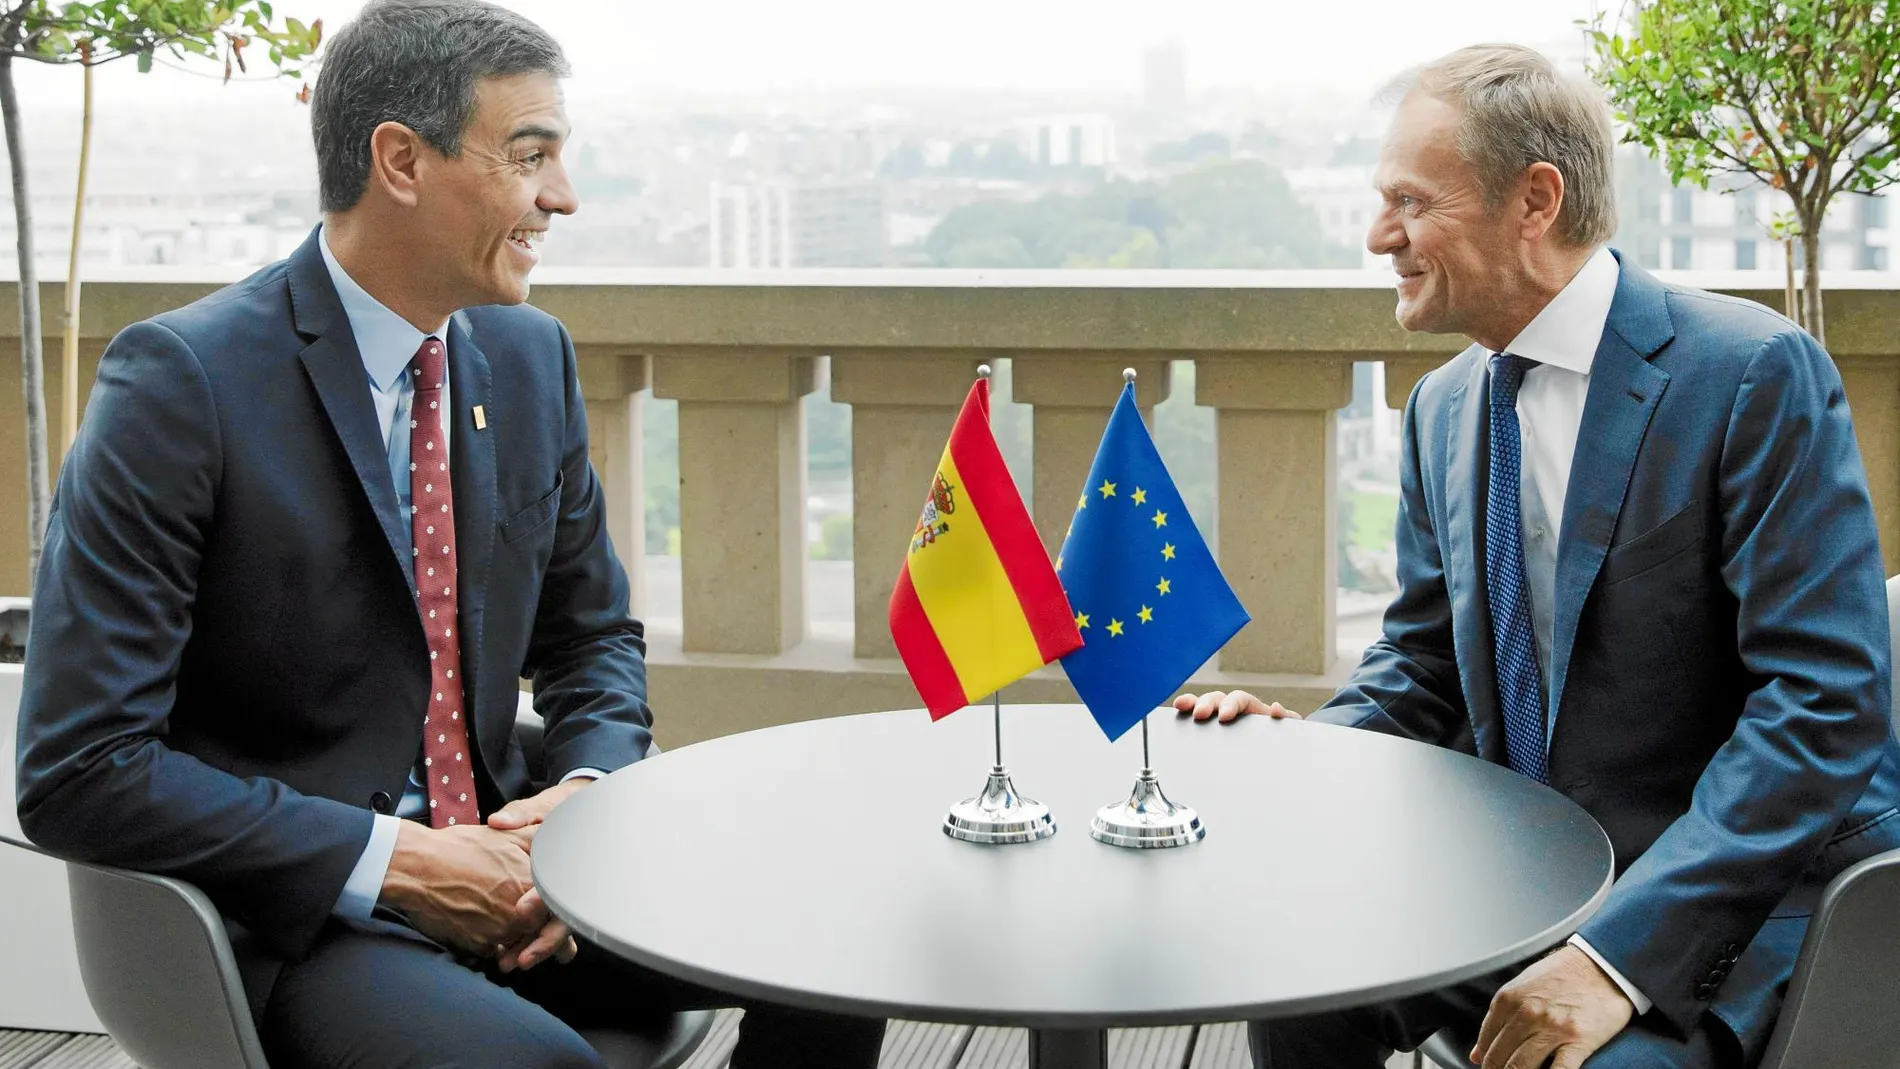 Pedro Sánchez dialoga con Donald Tusk en Bruselas / Ap